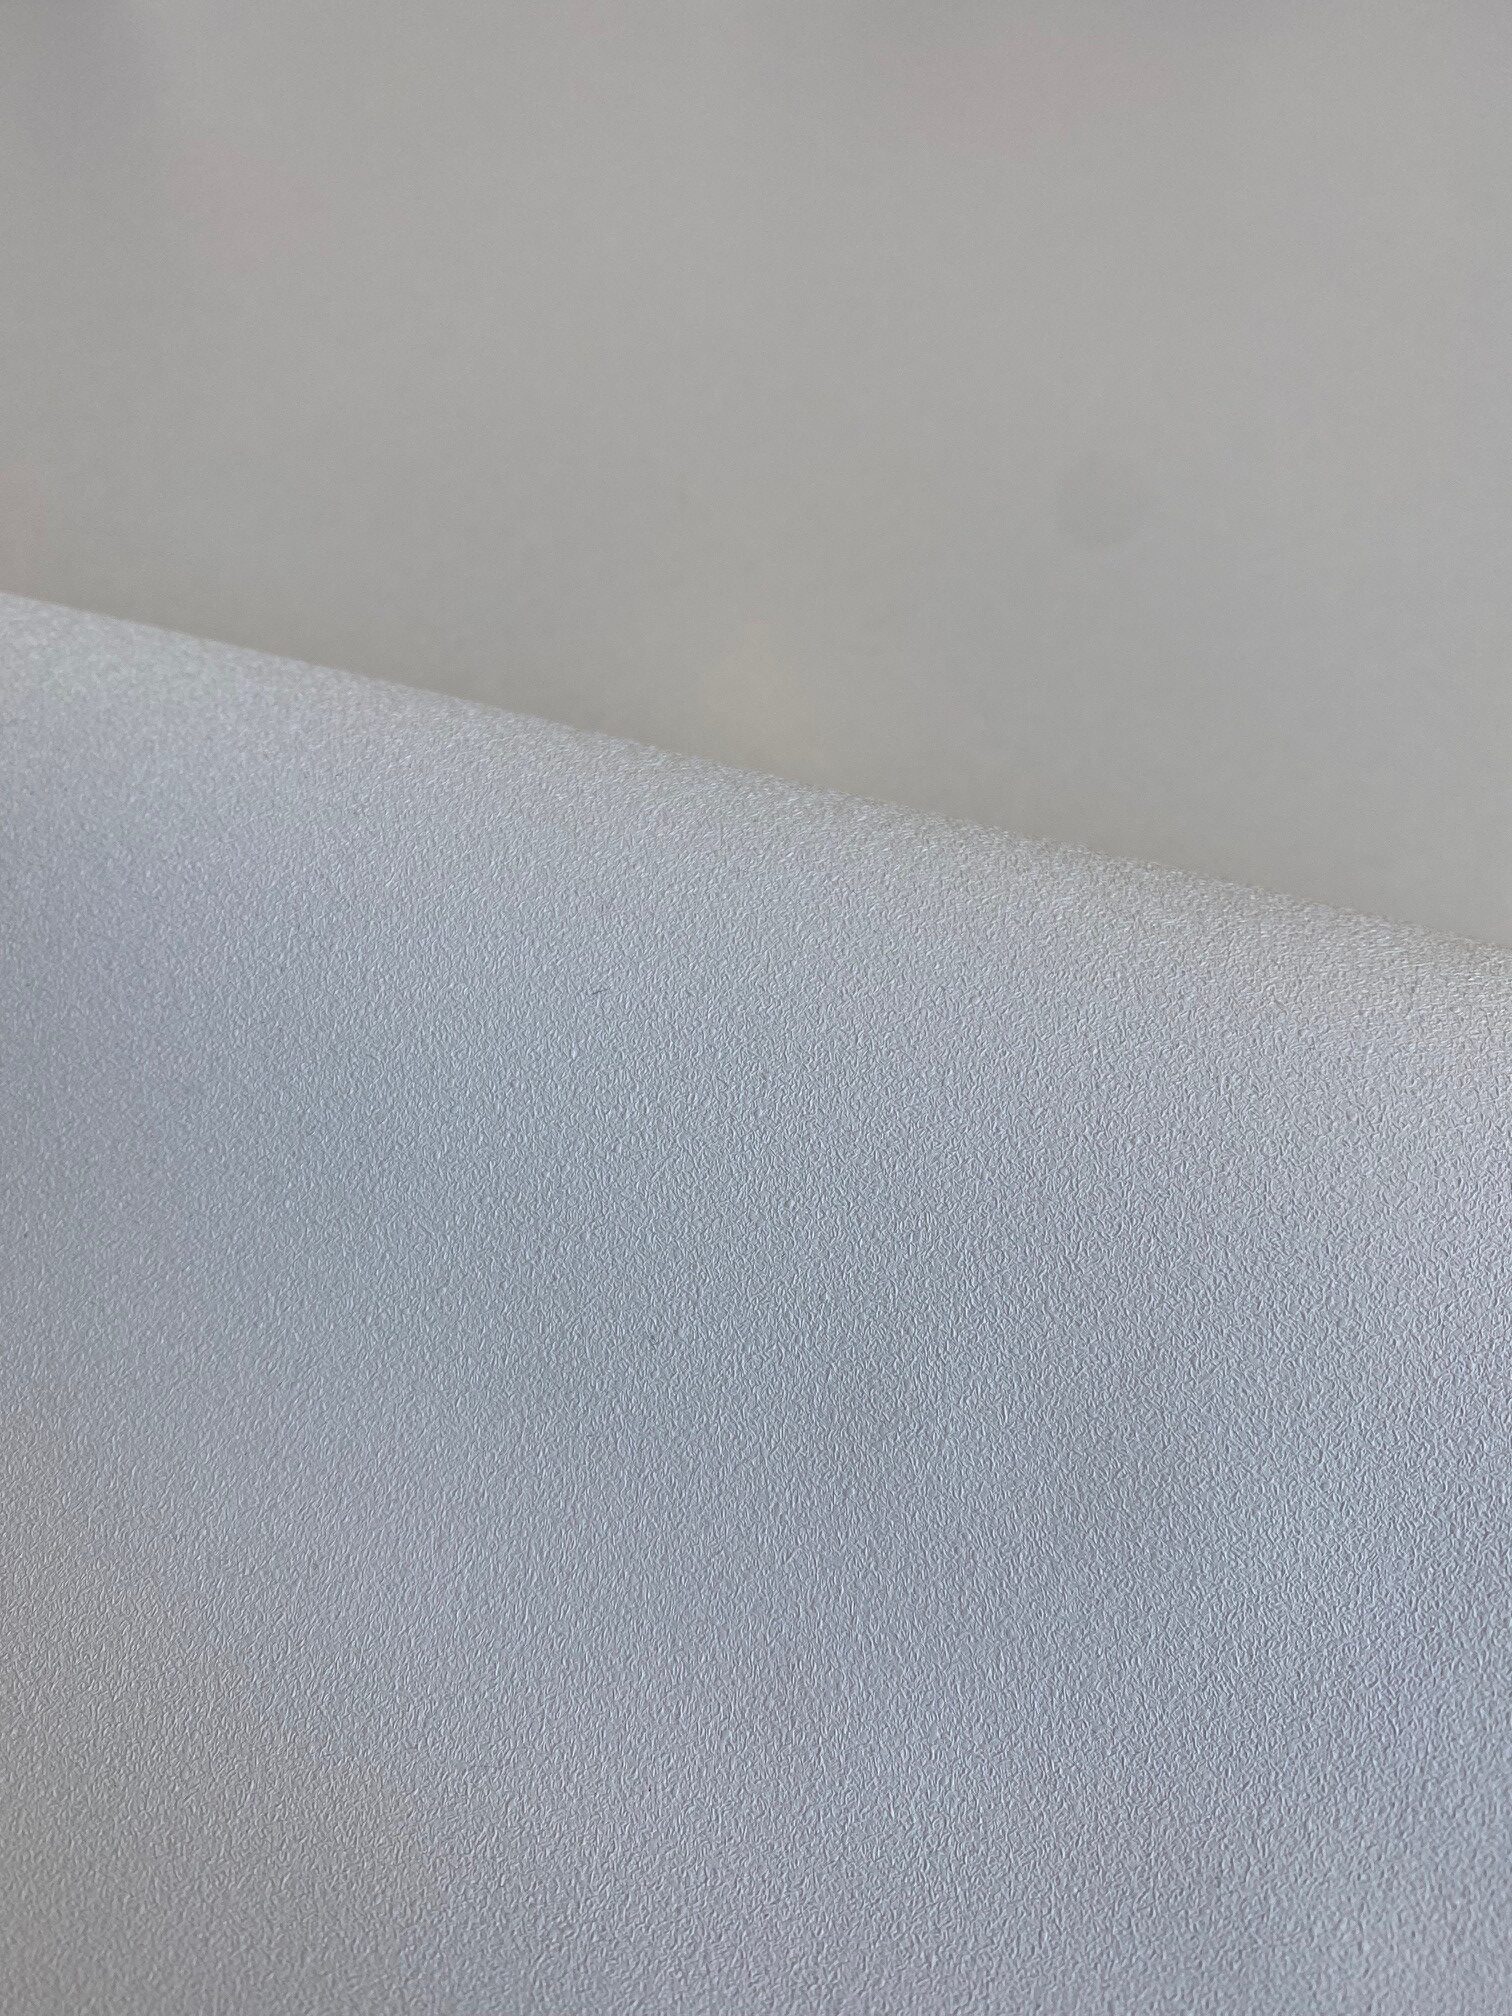 DESARDI Walltex Bondi Sands texture